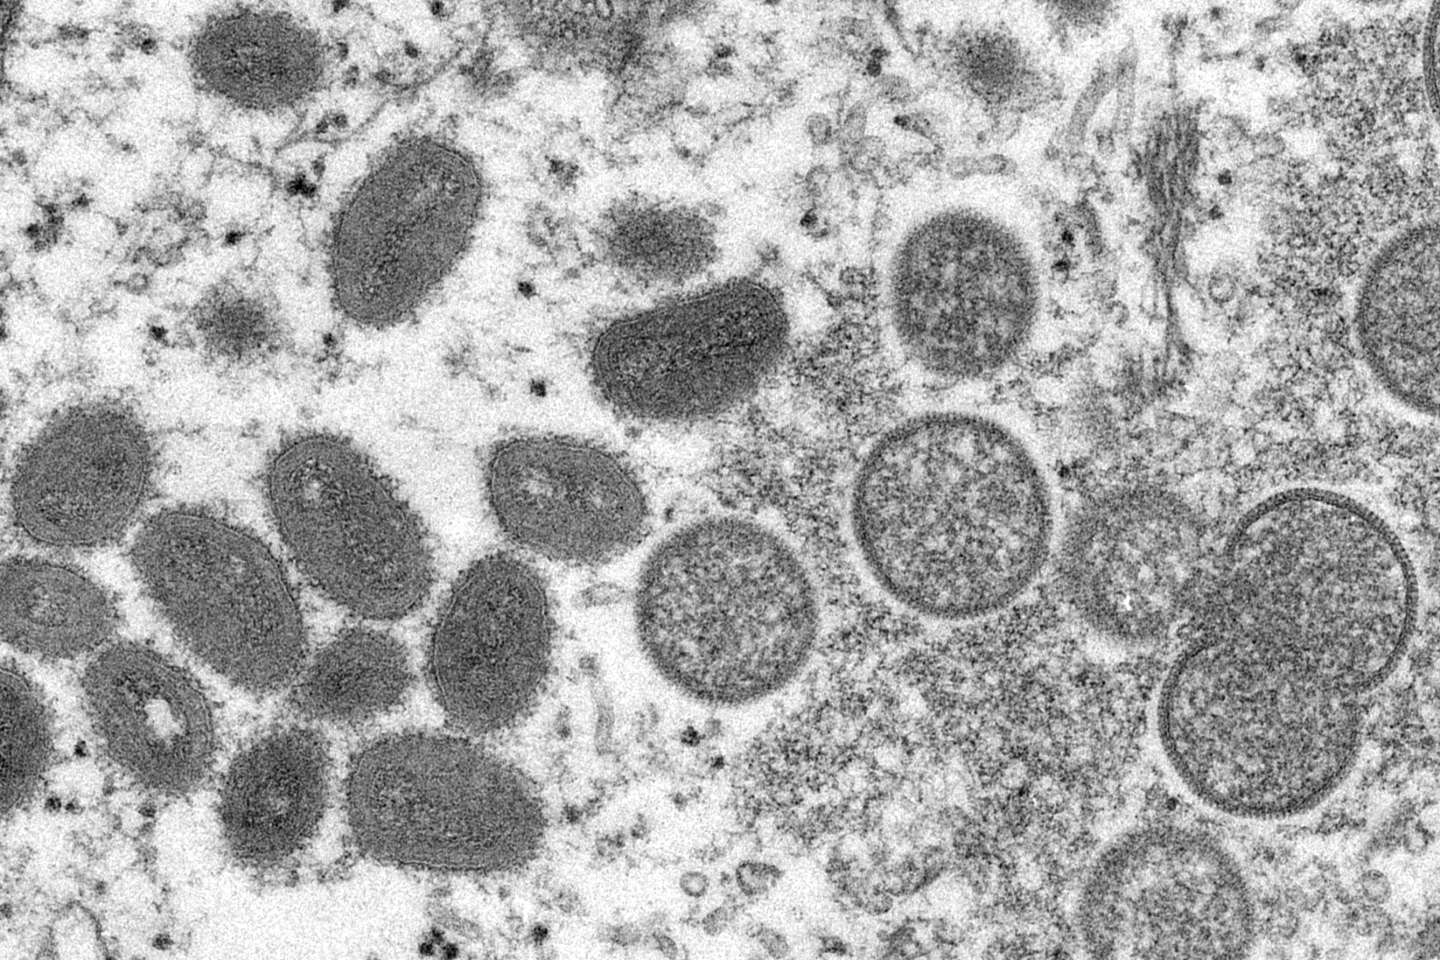 L’OMS va évaluer si la variole du singe représente une « urgence de santé publique internationale »